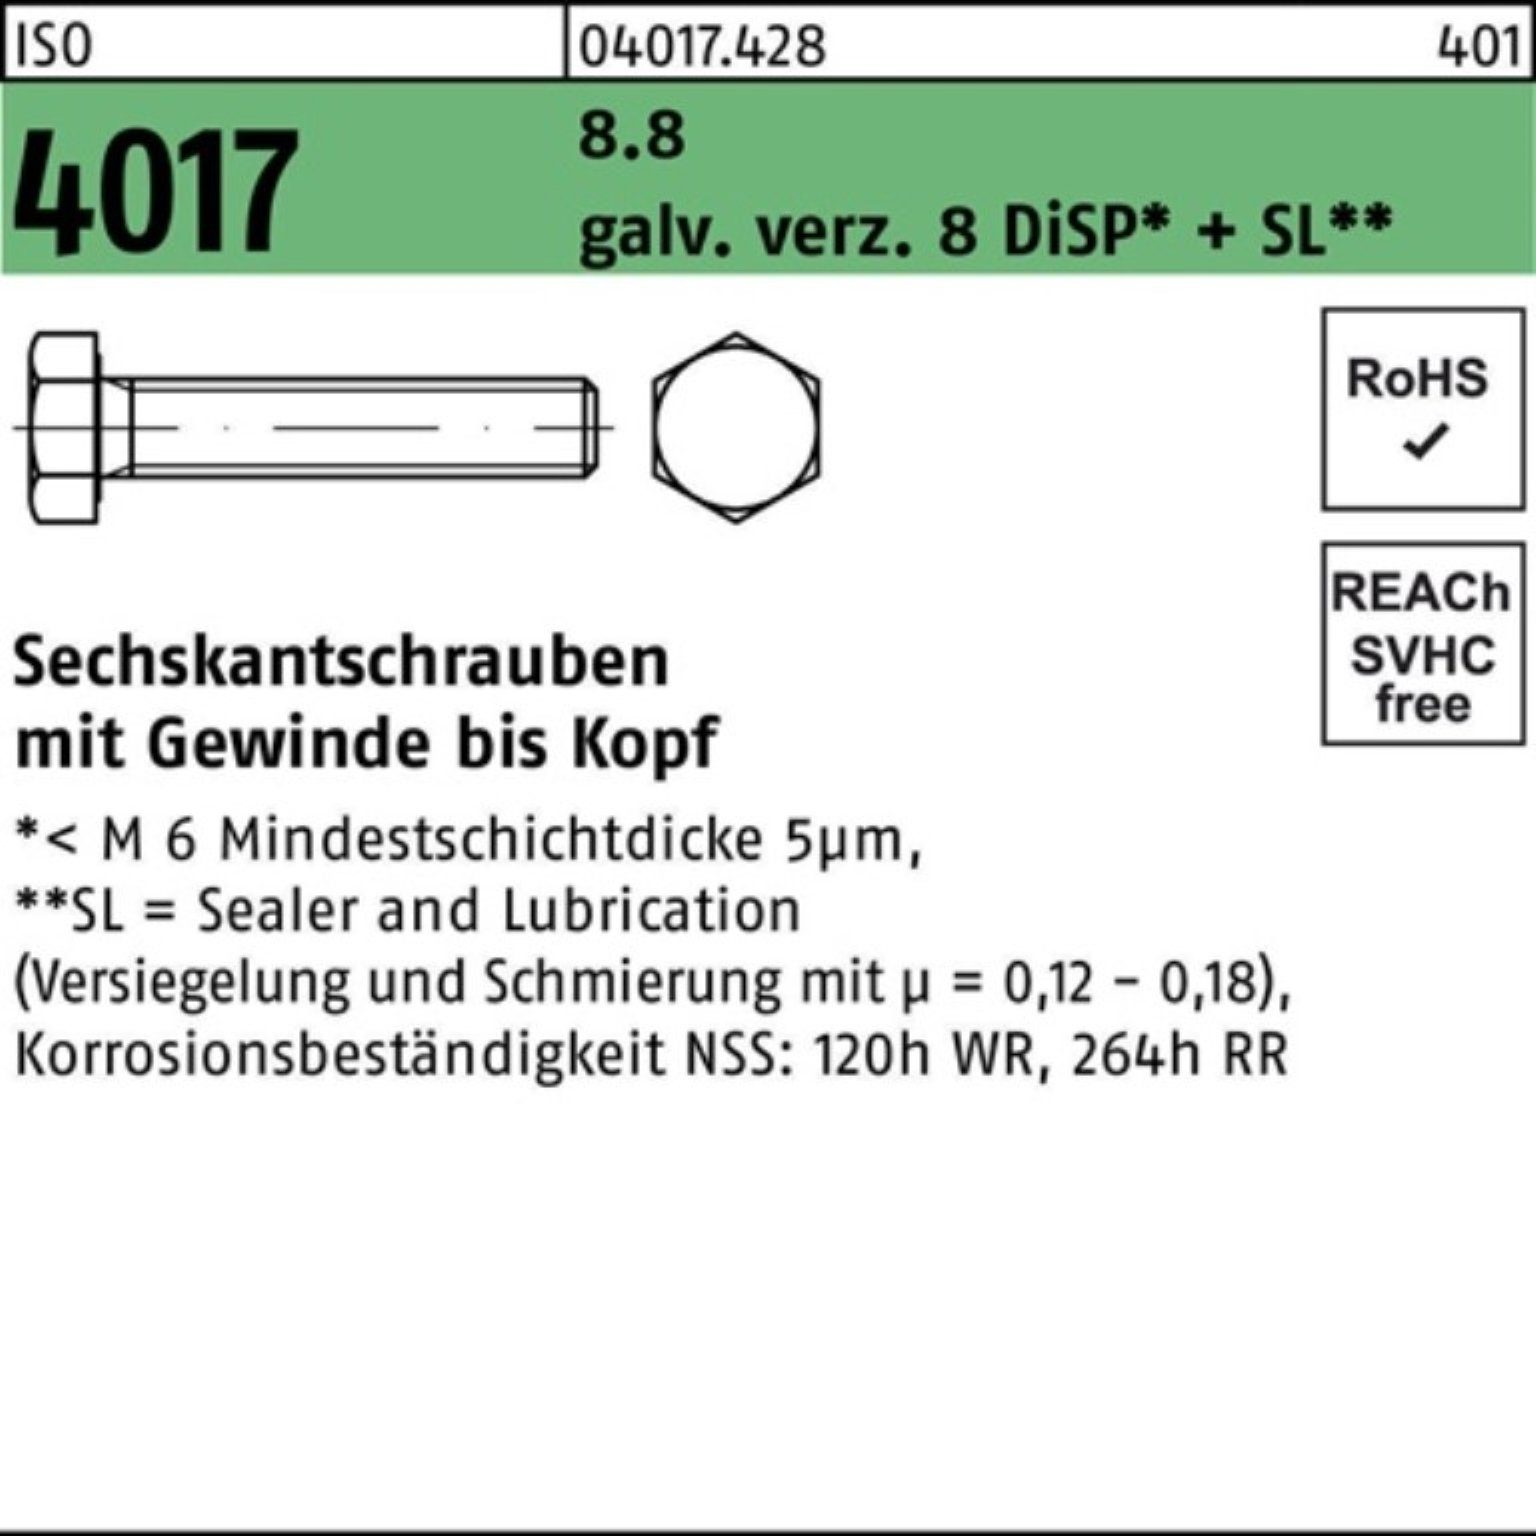 Bufab Sechskantschraube 200er Pack Sechskantschraube 10 ISO 8 M8x DiSP+ VG 4017 galv.verz. 8.8